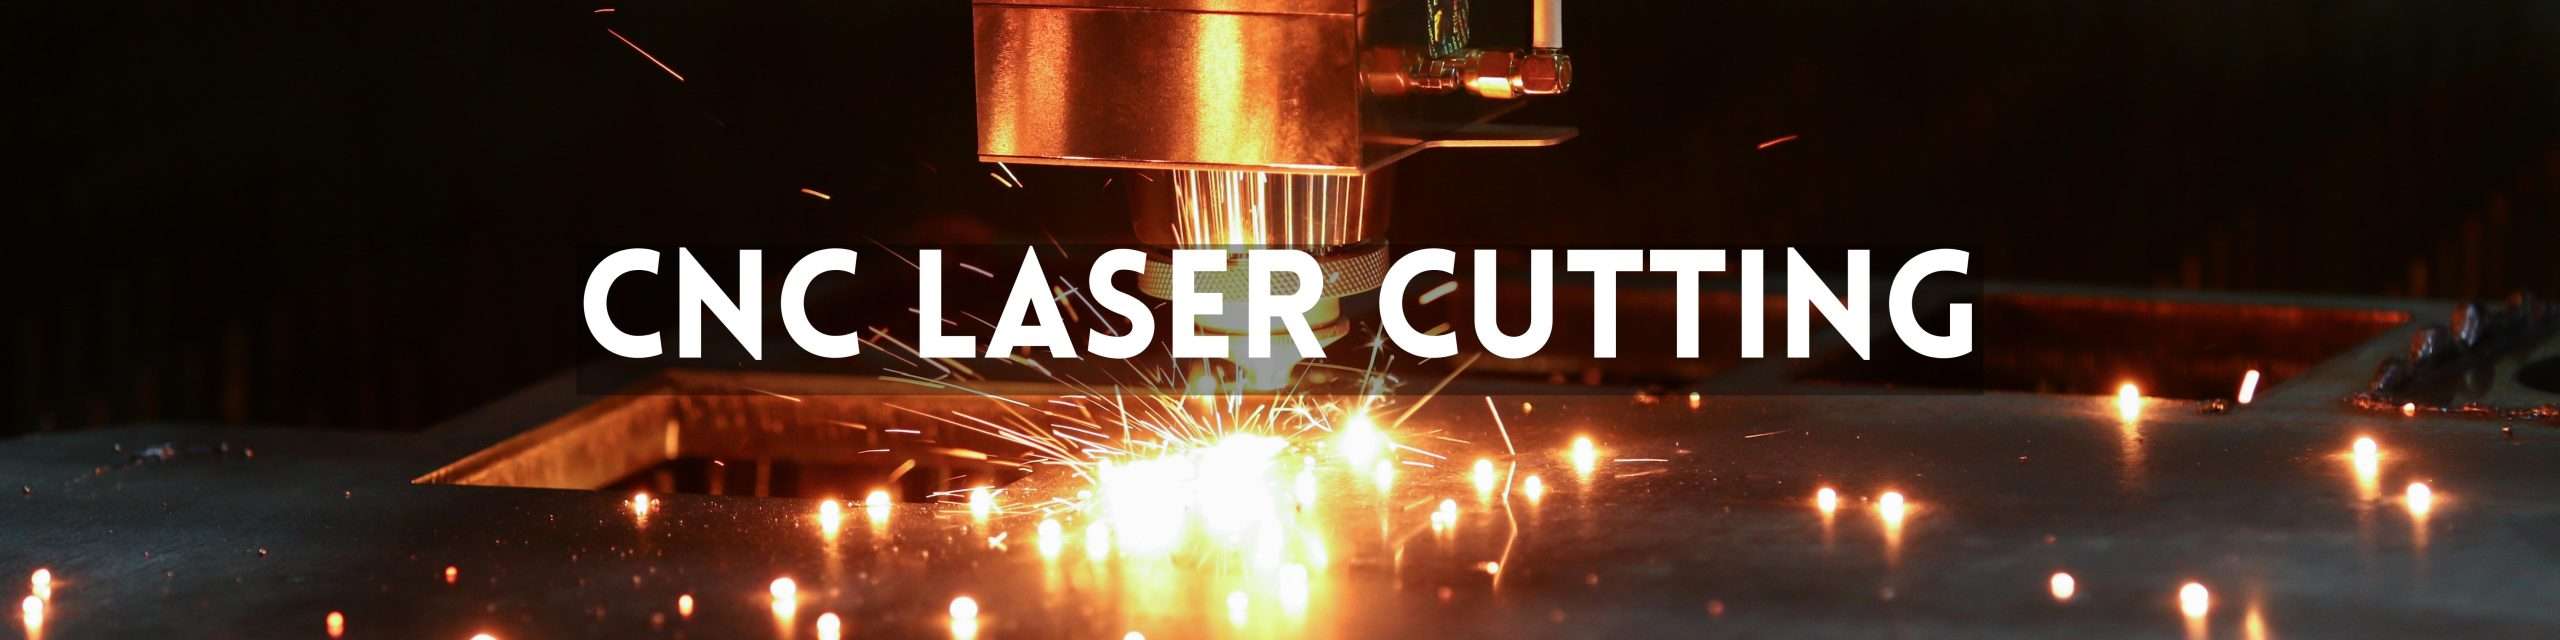 Online CNC Laser Cutting Machine Services Best Price in Haryana